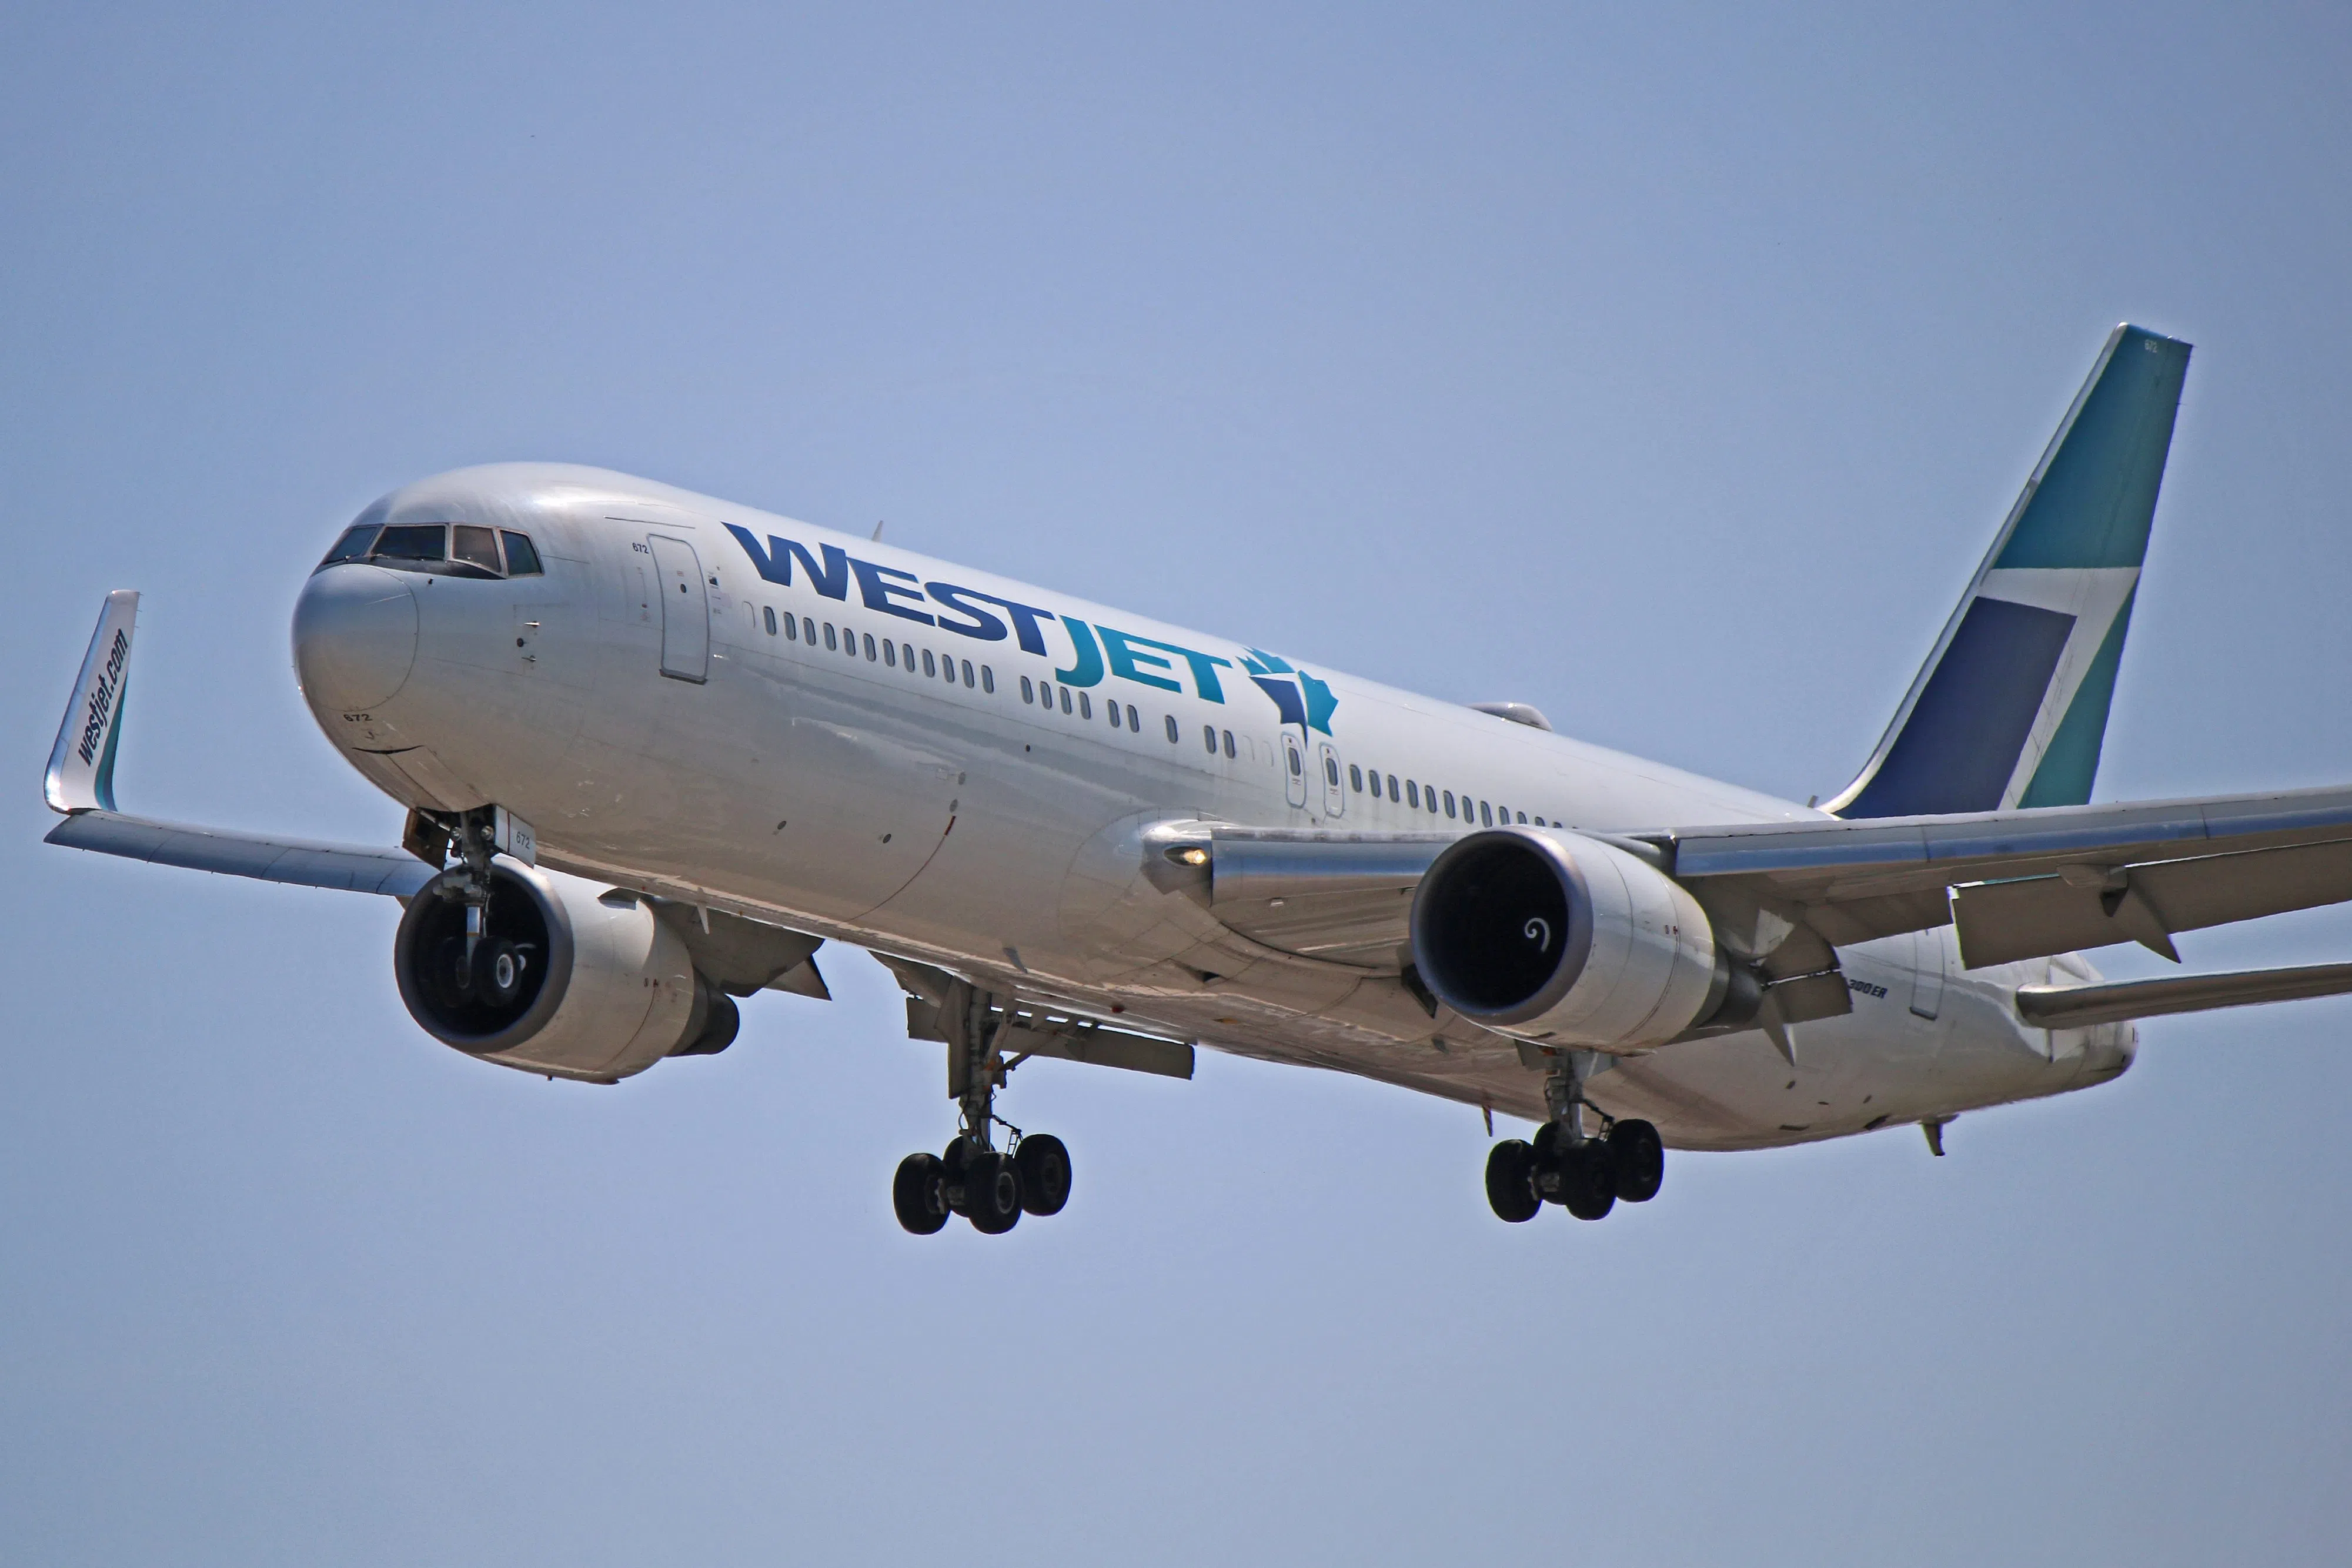 Tentative deal reached between WestJet and mechanics